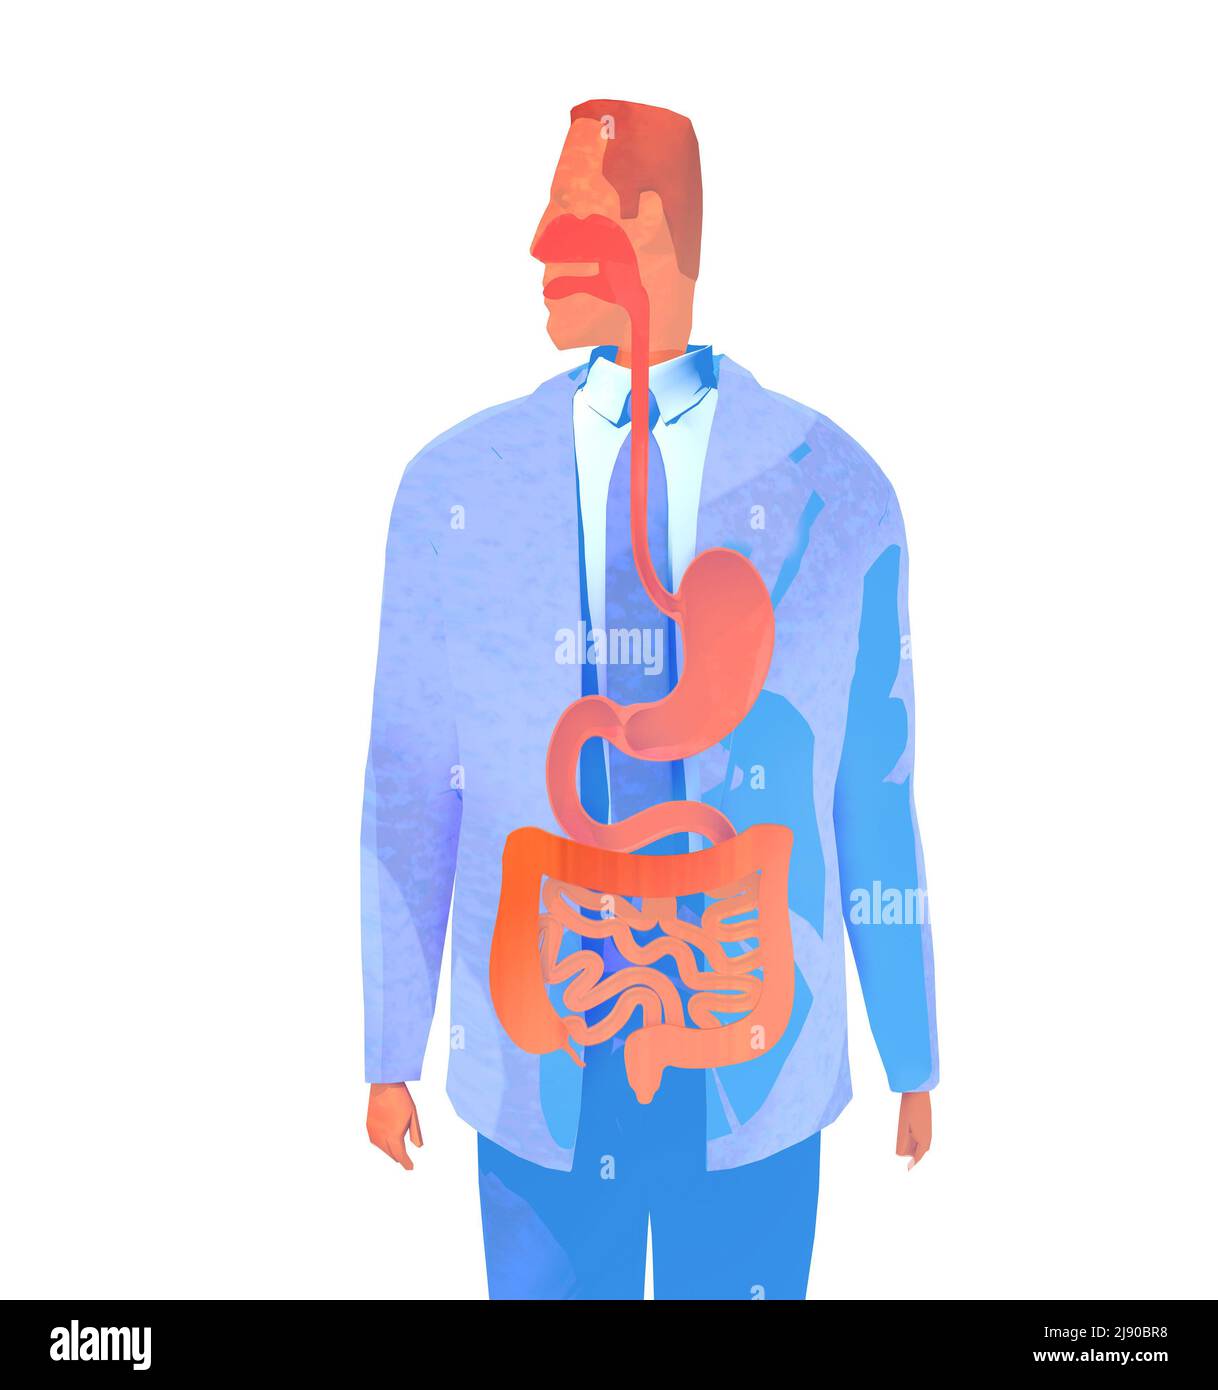 Illustration du système respiratoire humain de type aquarelle 3D. Image anatomique d'un homme vu de l'avant. Banque D'Images